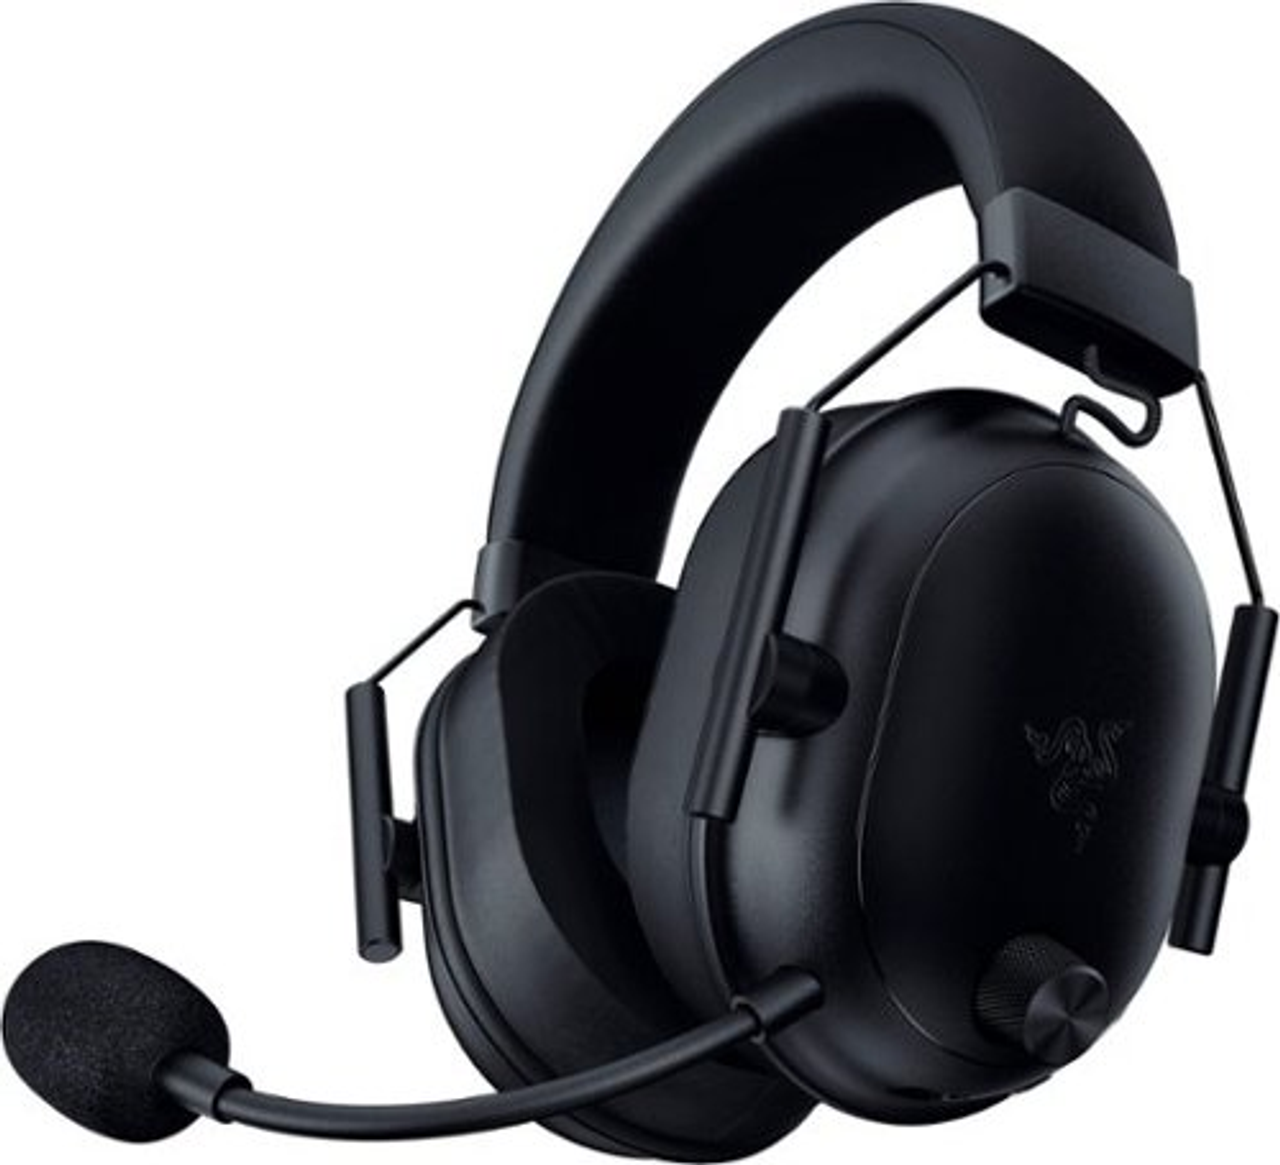 Razer Blackshark V2 Hyperspeed Wireless Gaming Headset - Black